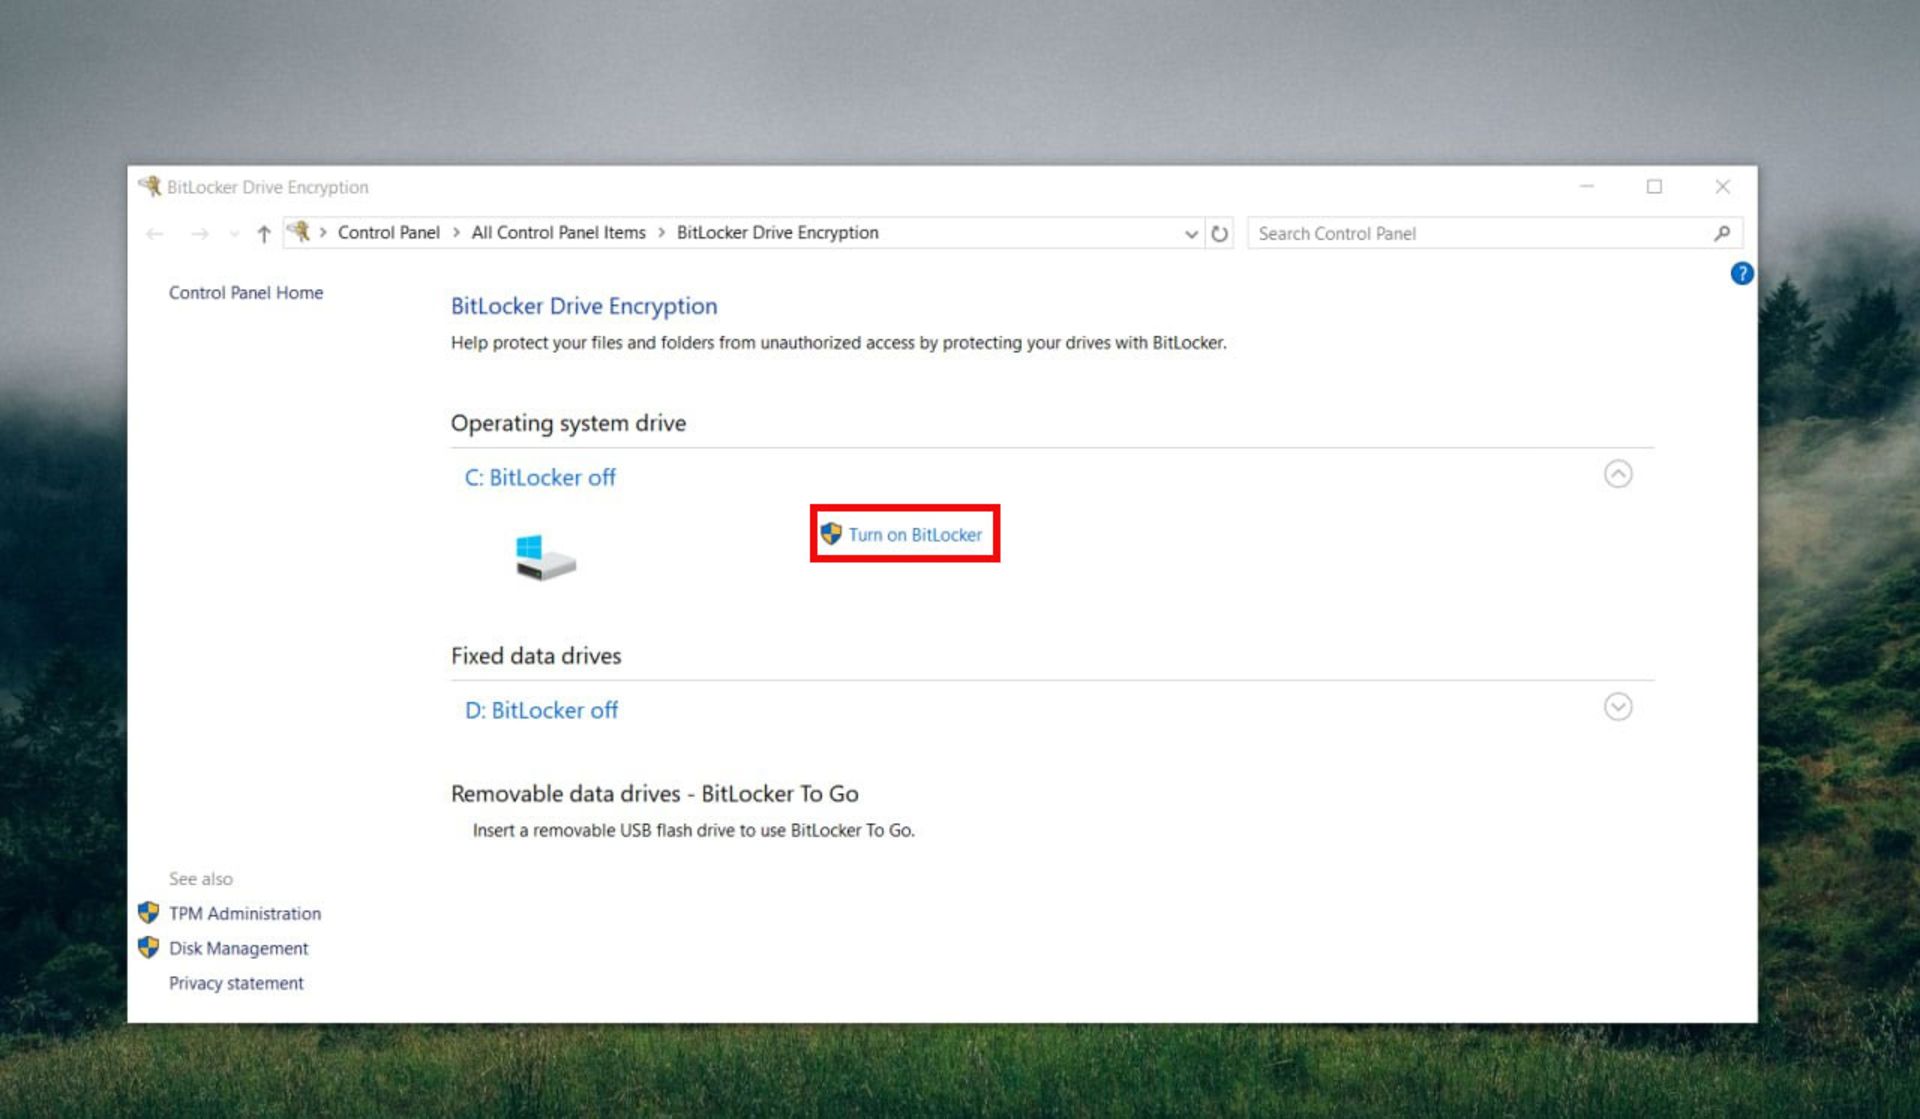 Bitlocker settings in Windows 10